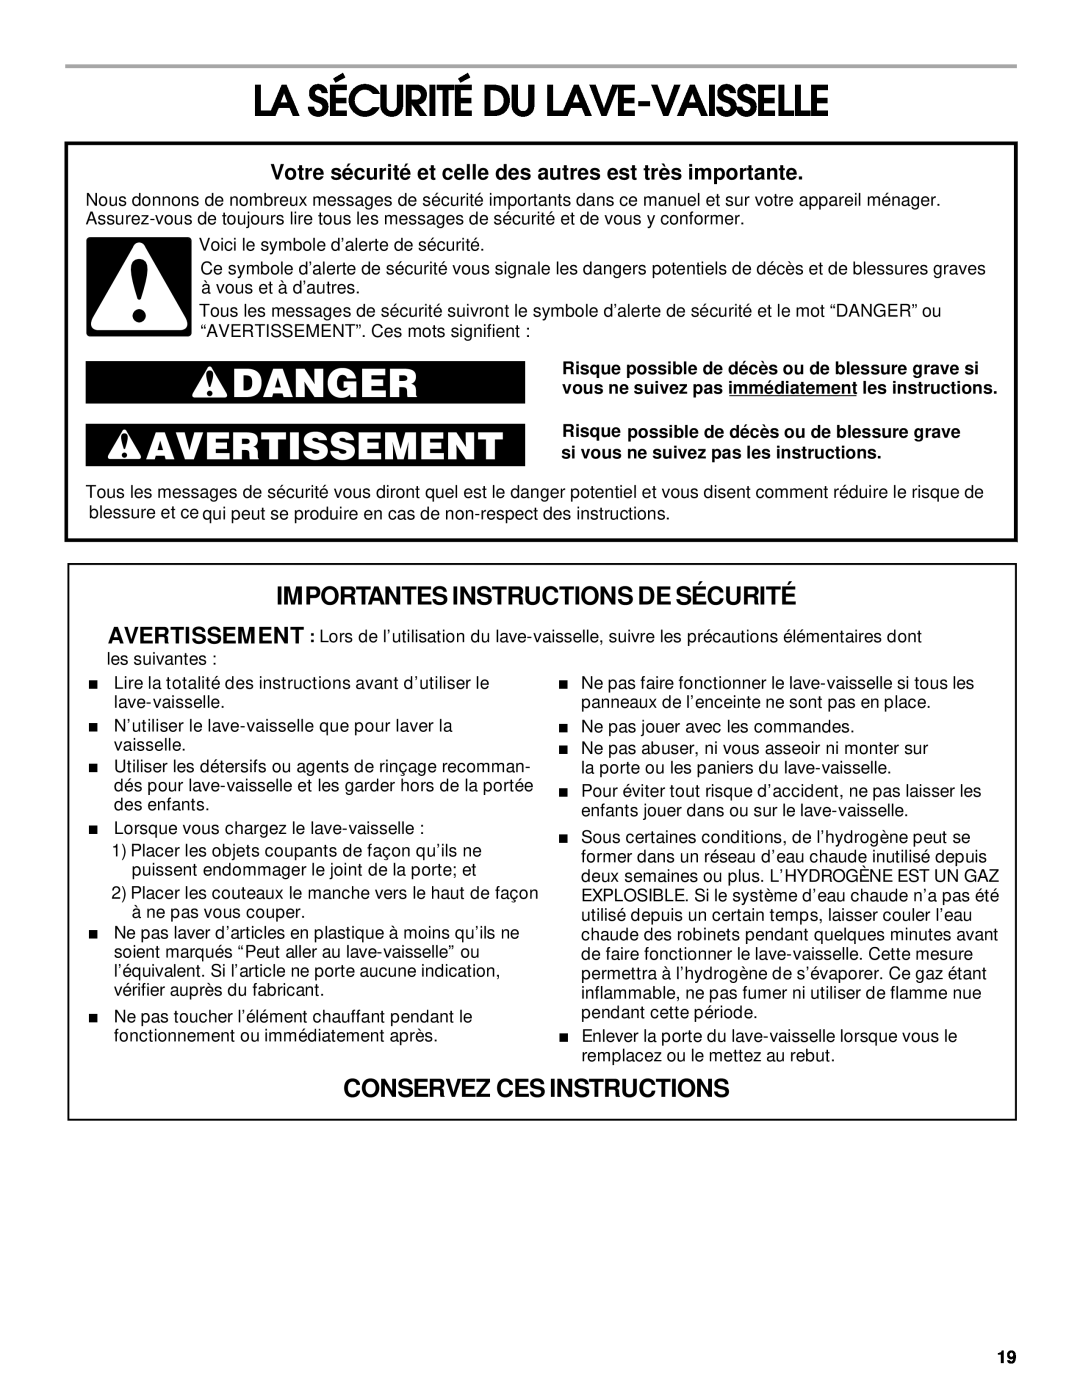 Roper RUD1000, 119 La Sécurité Du Lave-Vaisselle, Importantes Instructions De Sécurité, Conservez Ces Instructions, Danger 